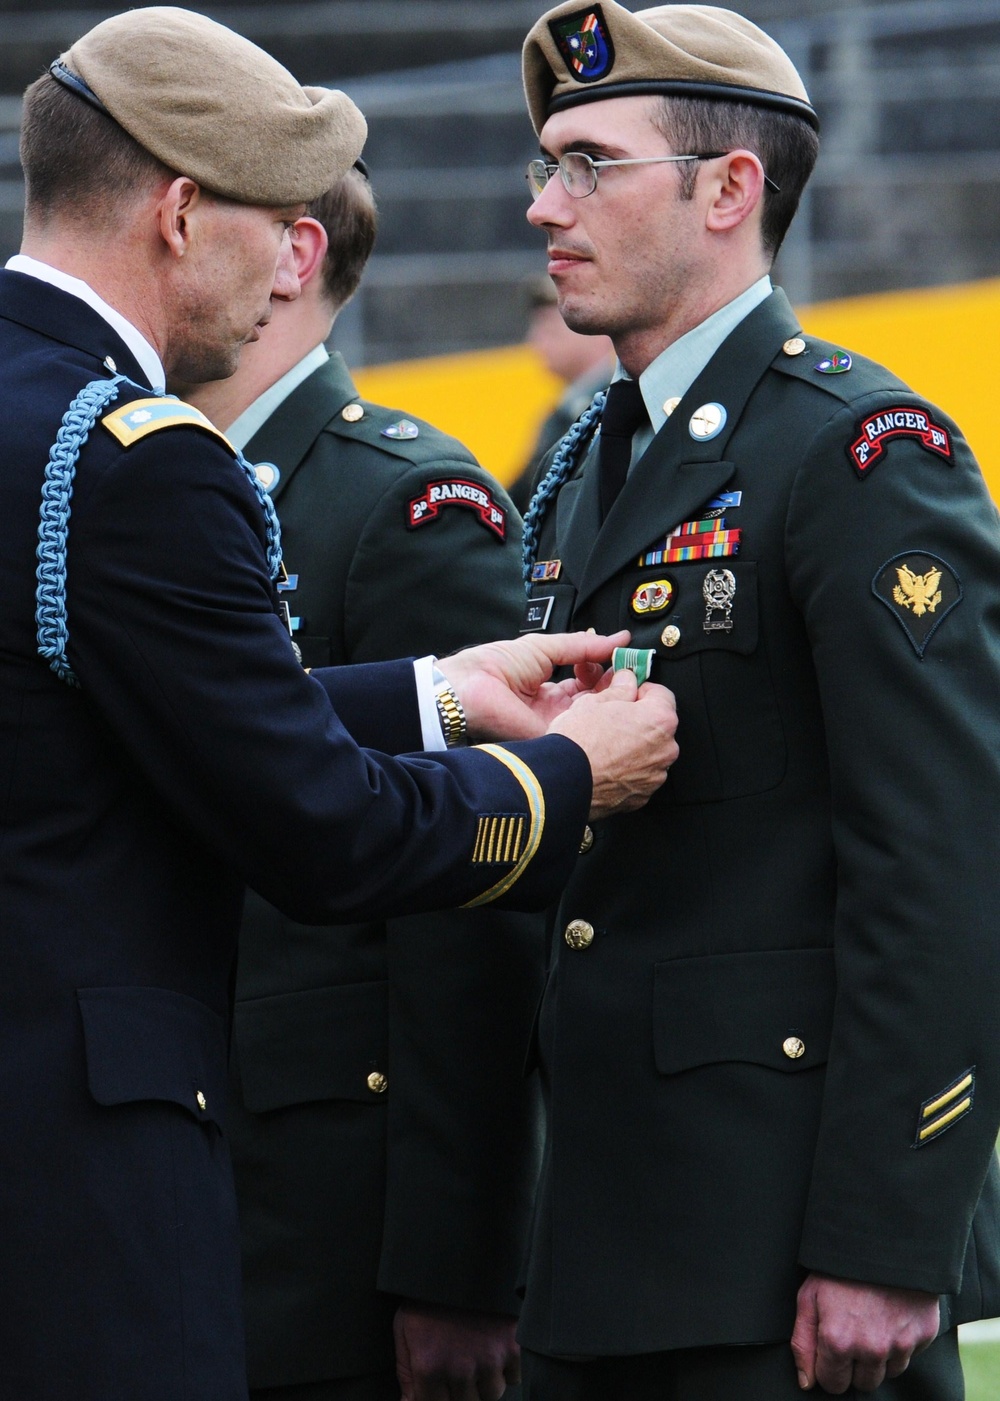 2-75 commander publicly recognizes rangers for valorous combat actions